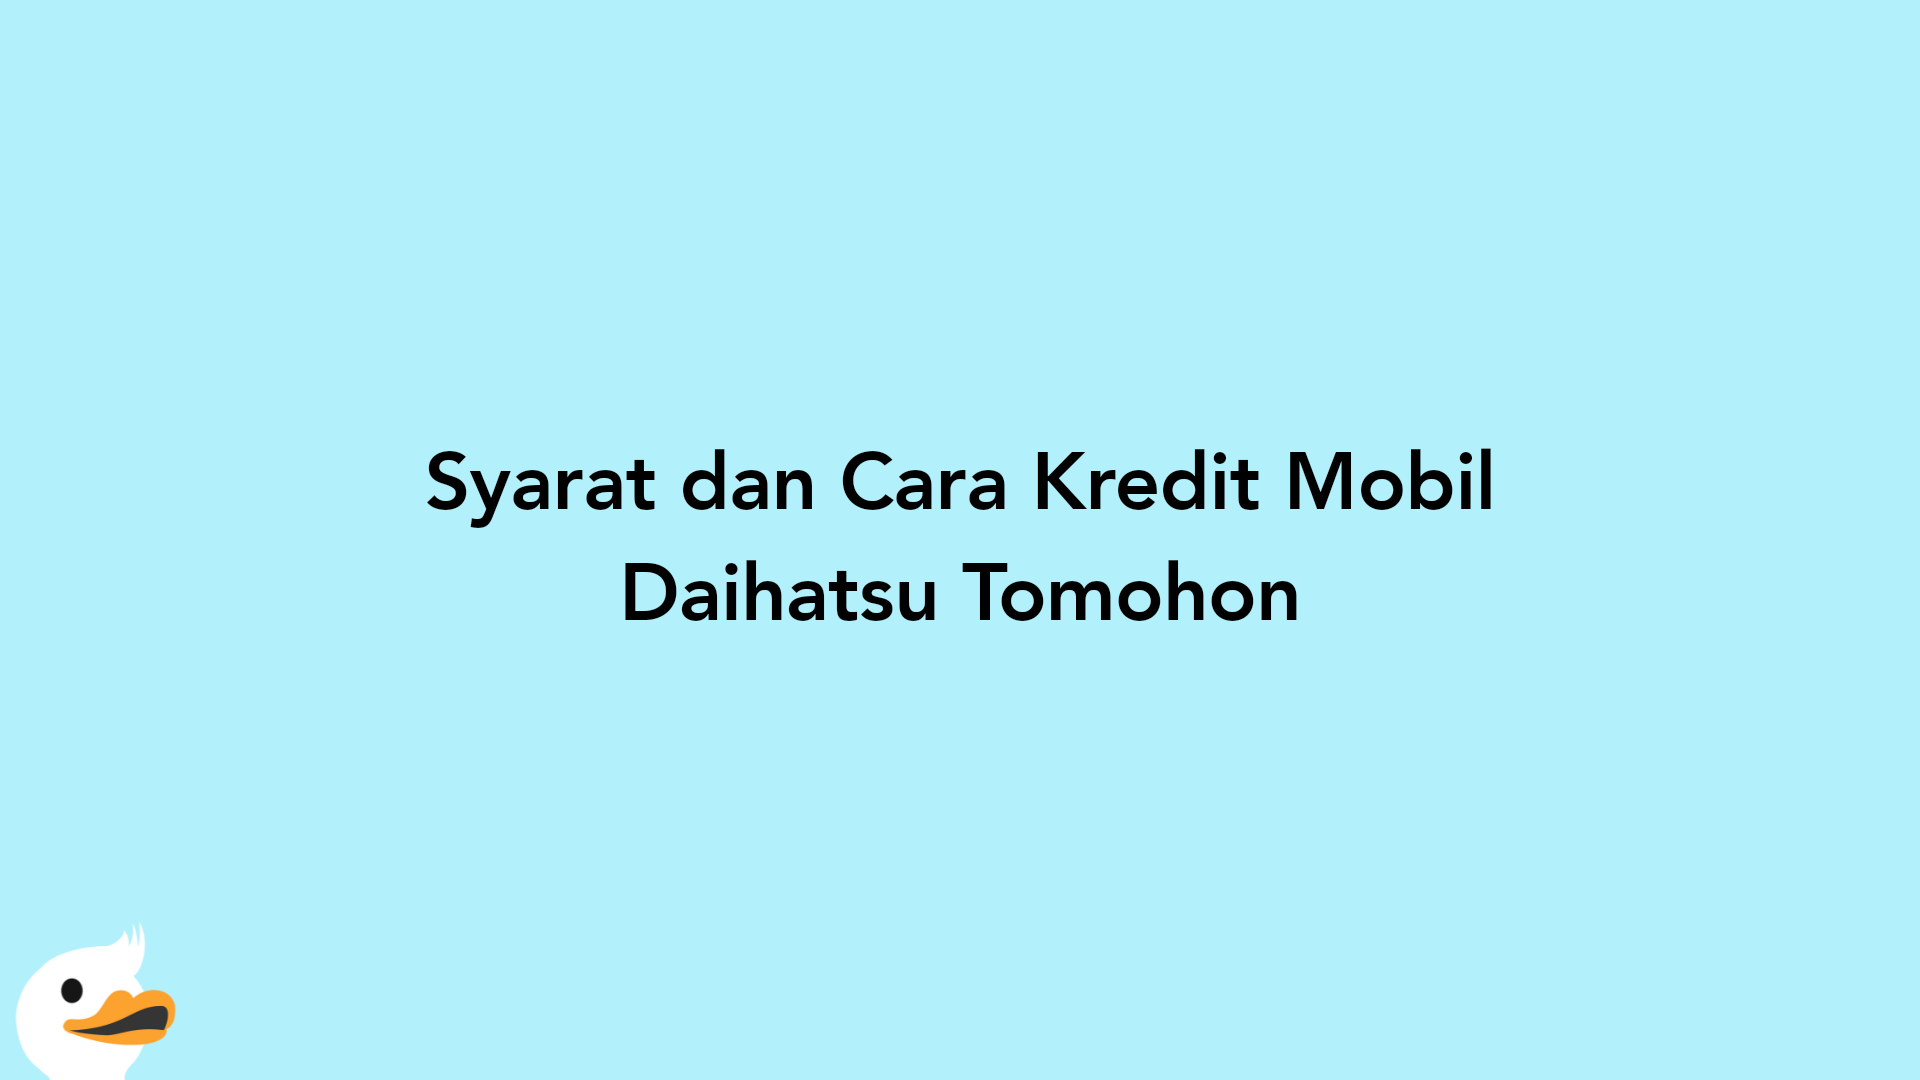 Syarat dan Cara Kredit Mobil Daihatsu Tomohon